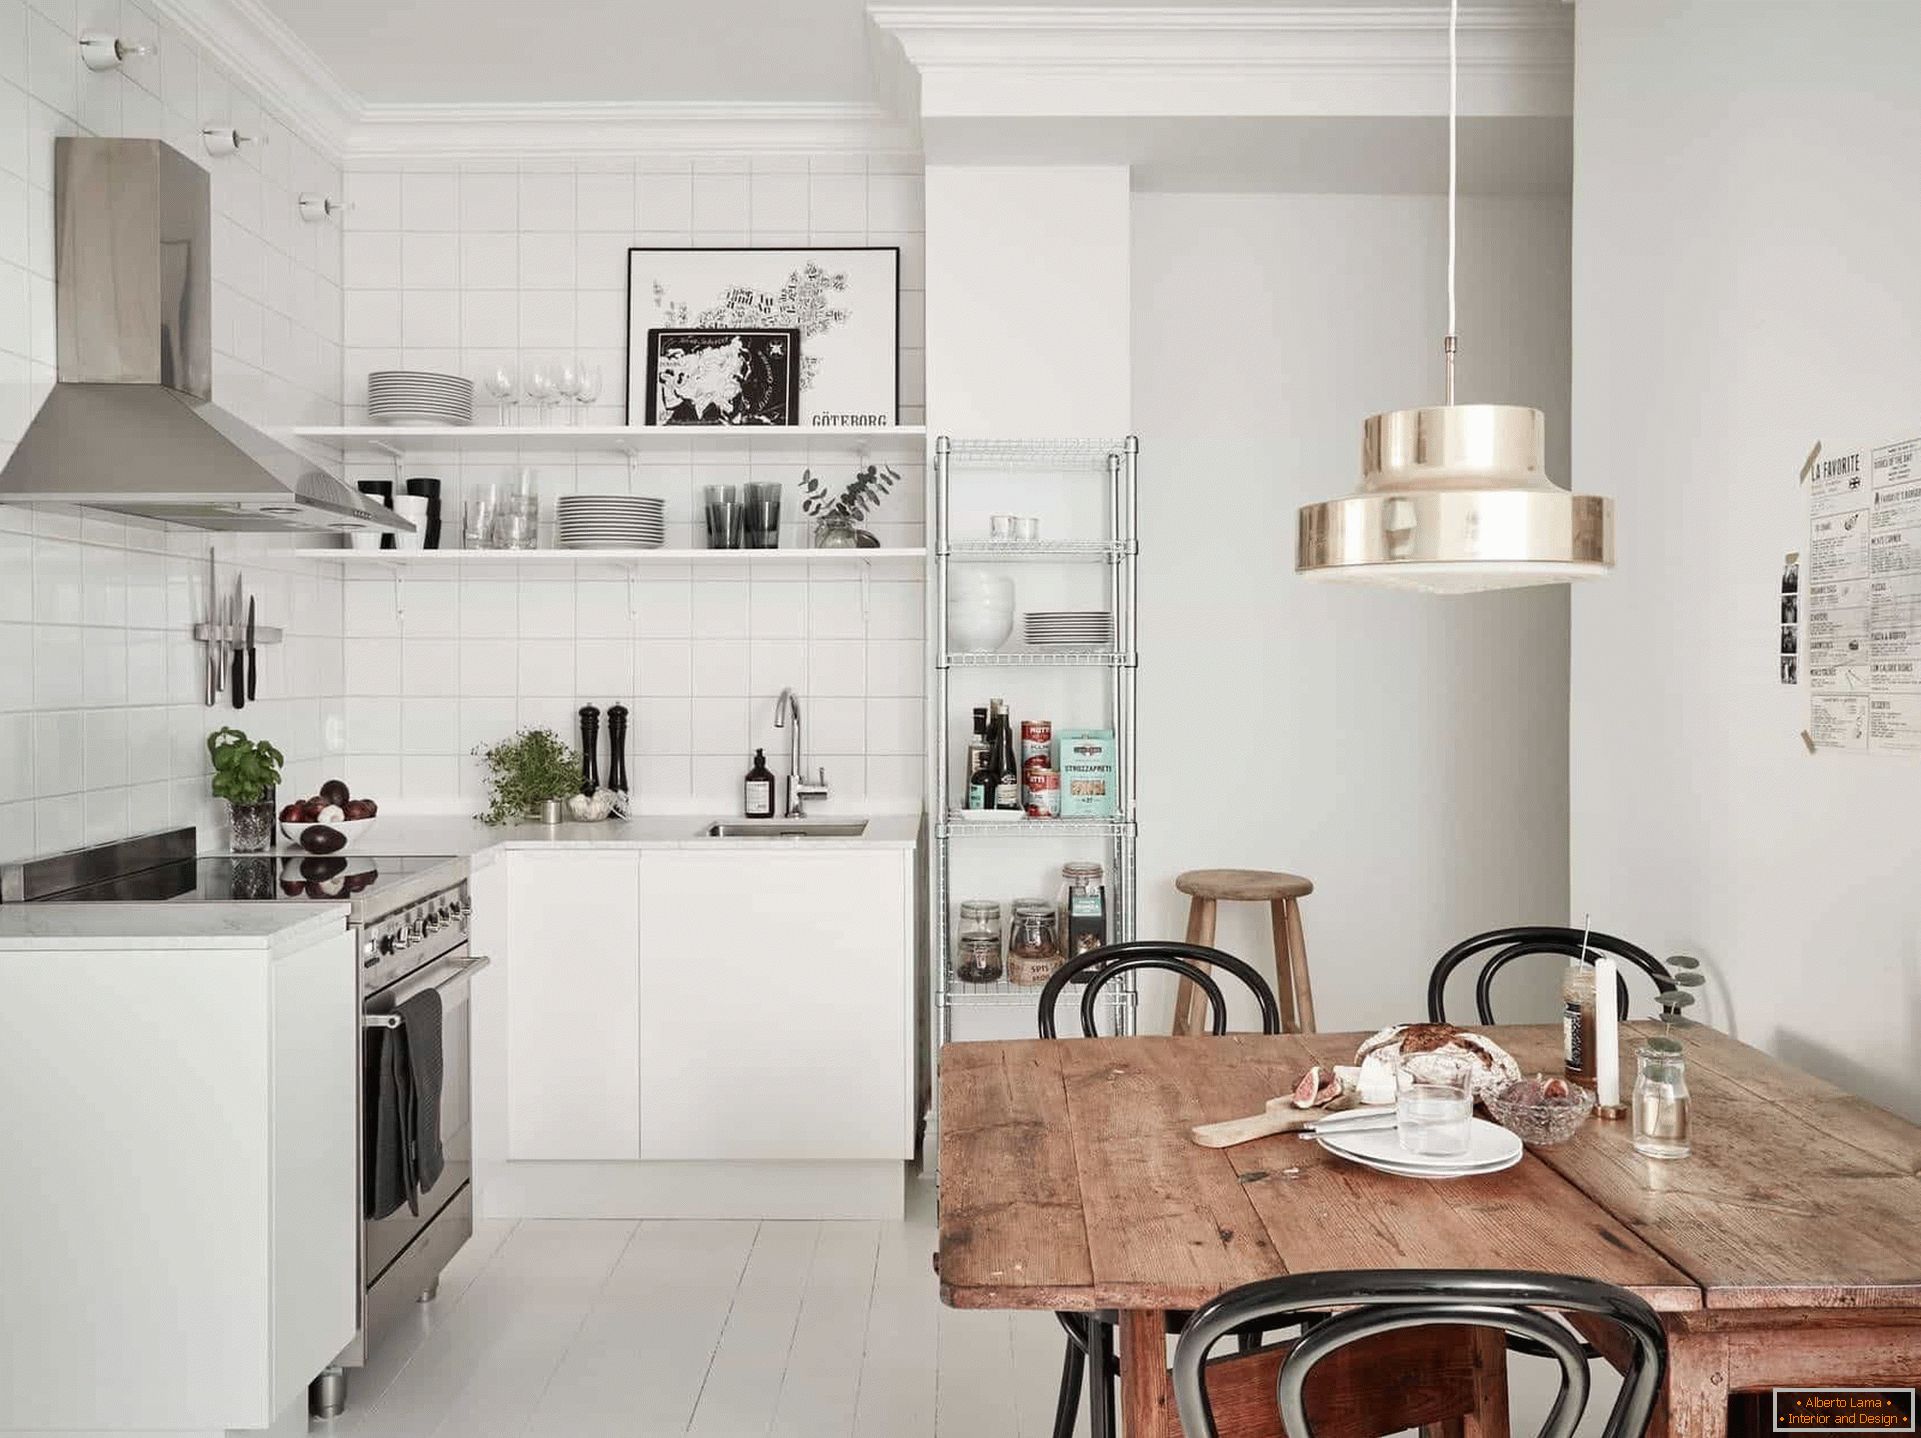 Kücheneinrichtung im skandinavischen Stil